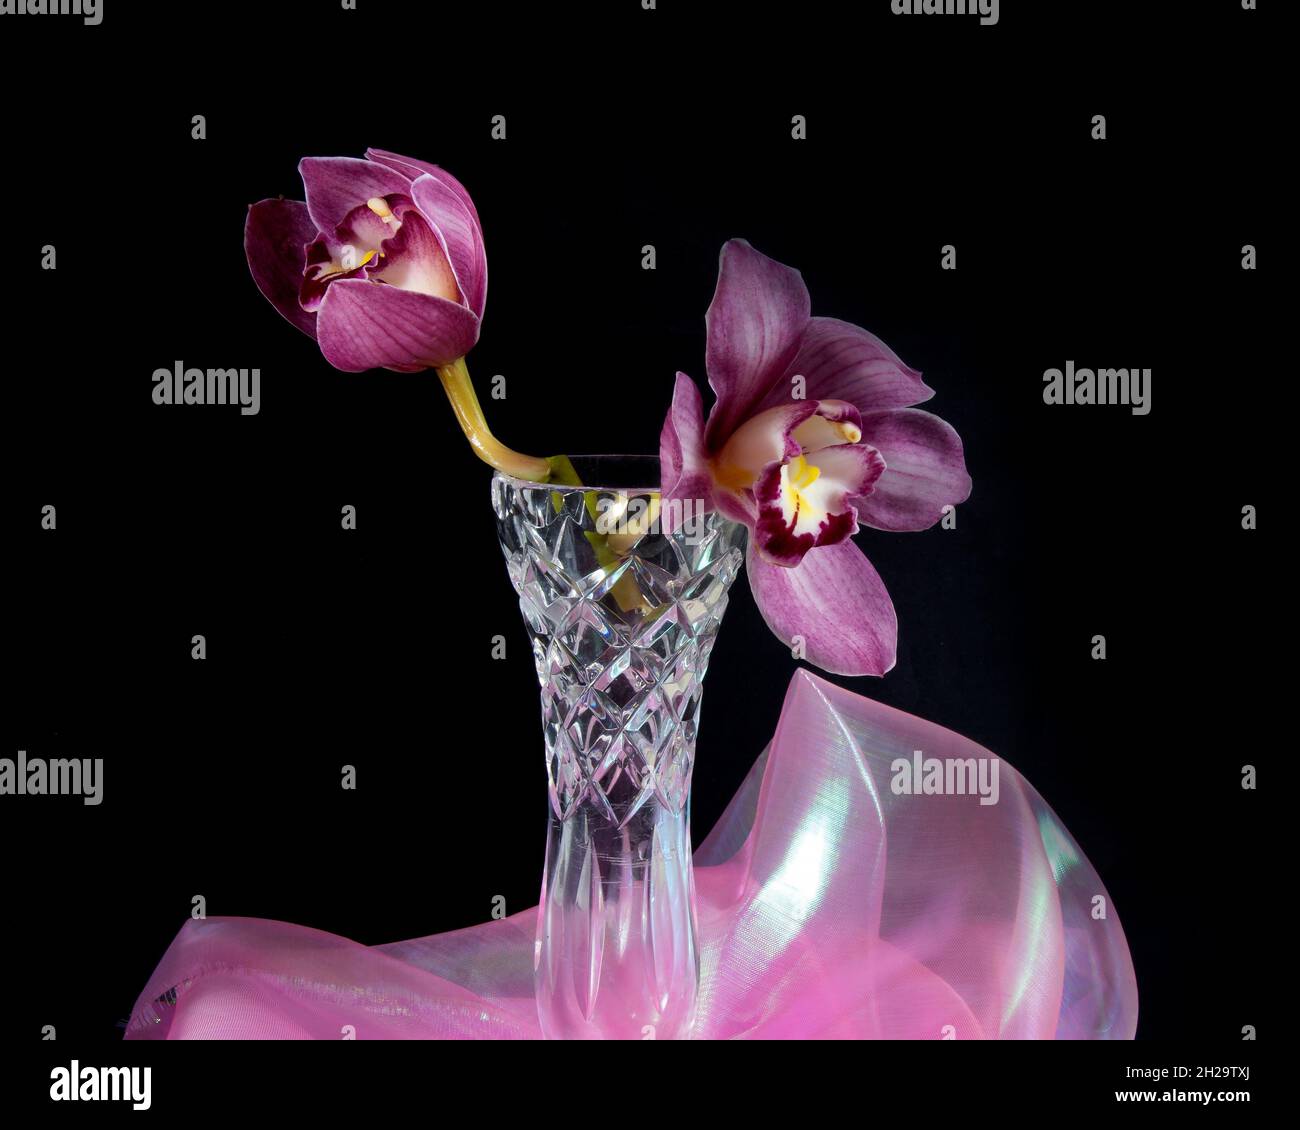 Hübsche, lavendelrosa Cymbidium Clarisse Orchid, auch bekannt als Boat Orchid, in einer Vase, die auf einem schwarzen Hintergrund in Nahaufnahme isoliert ist. Wunderschön f Stockfoto